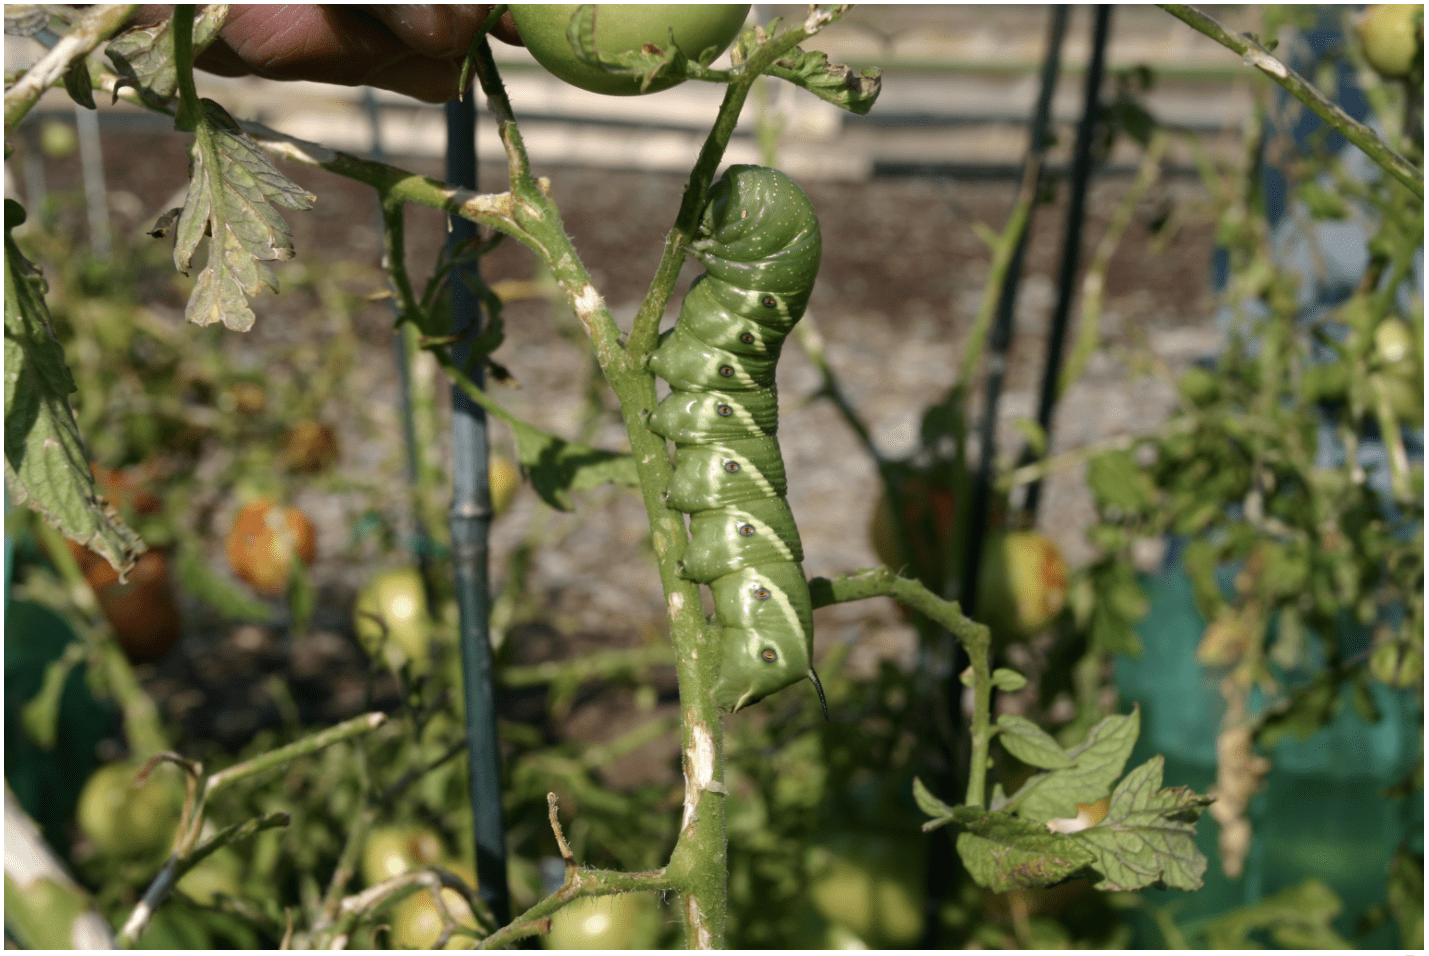 tomato hornworm